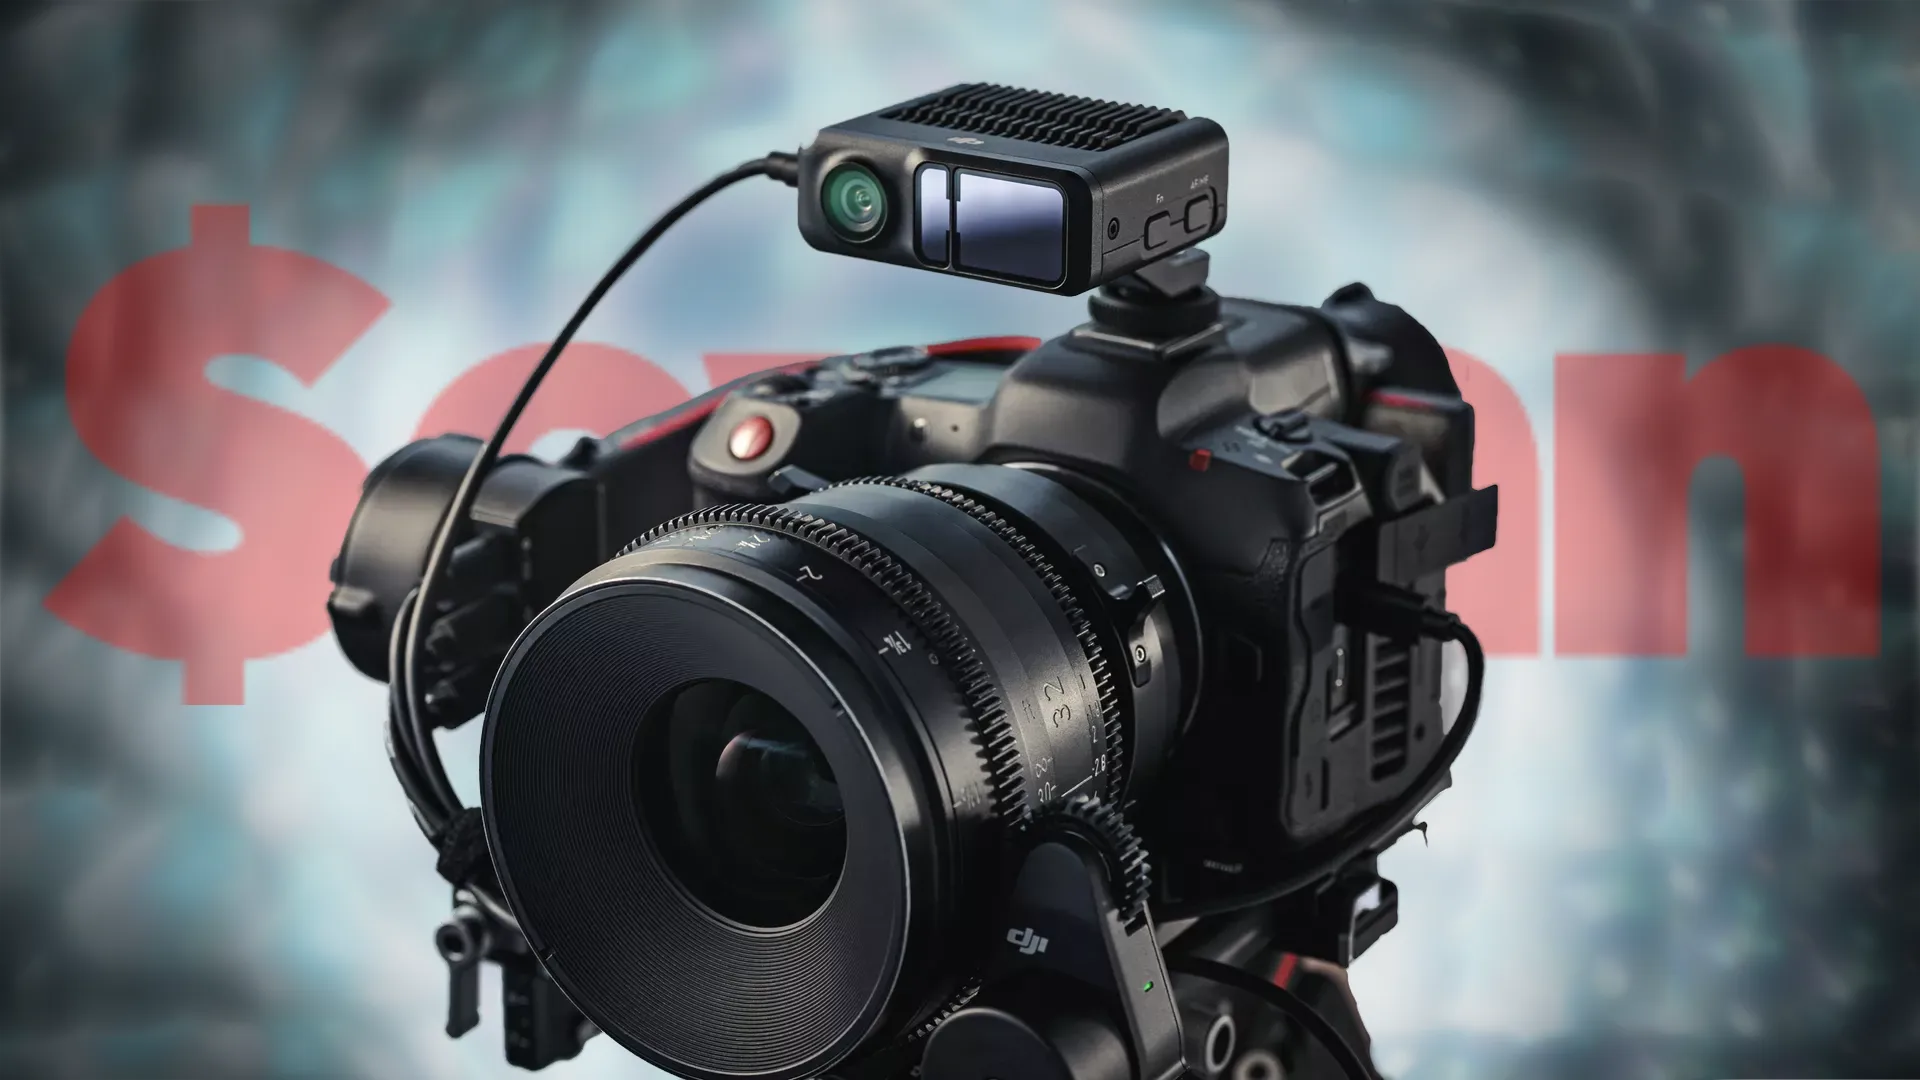 L'autofocus LiDAR révolutionne les appareils photo sans miroir : DJI et Panasonic collaborent pour l'innovation